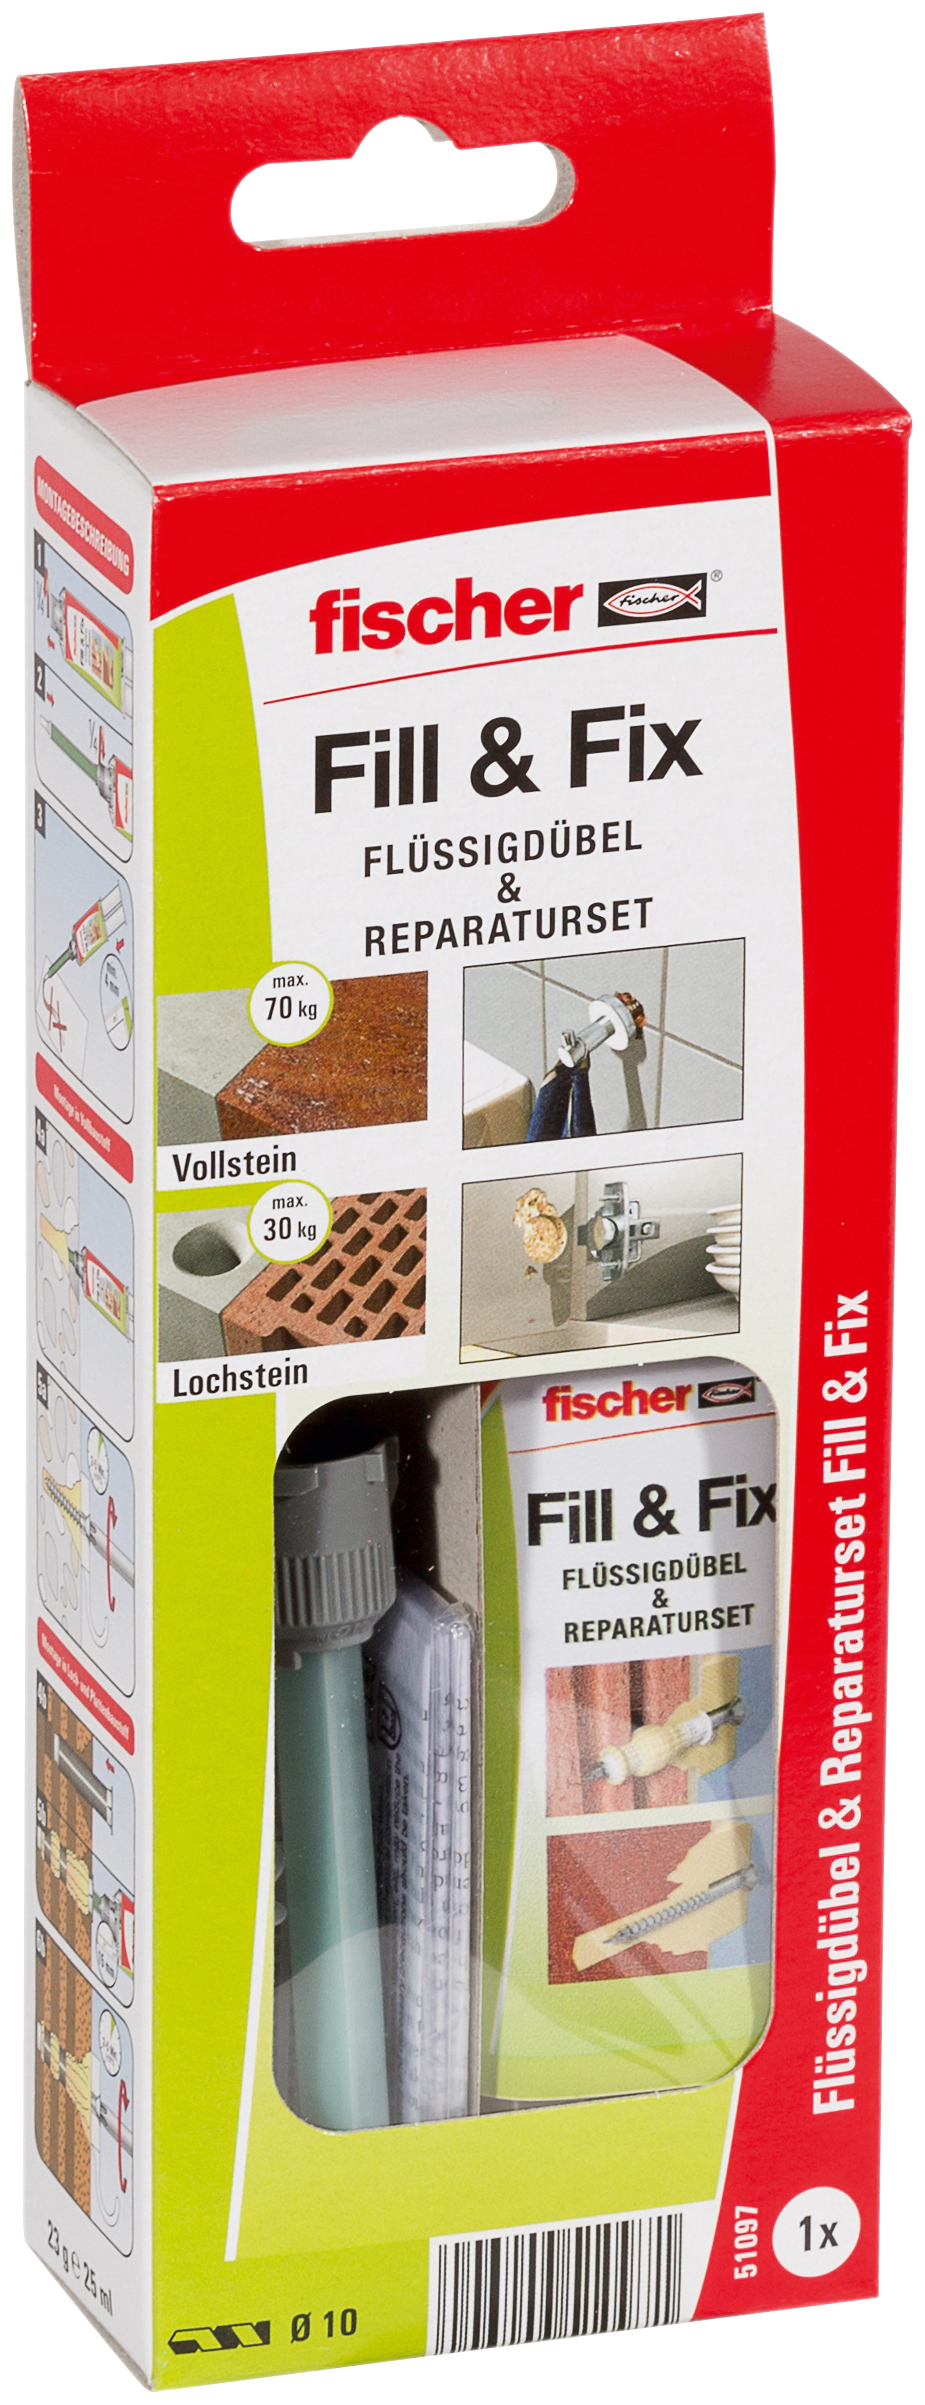 fischer Flüssigdübel Fill & Fix